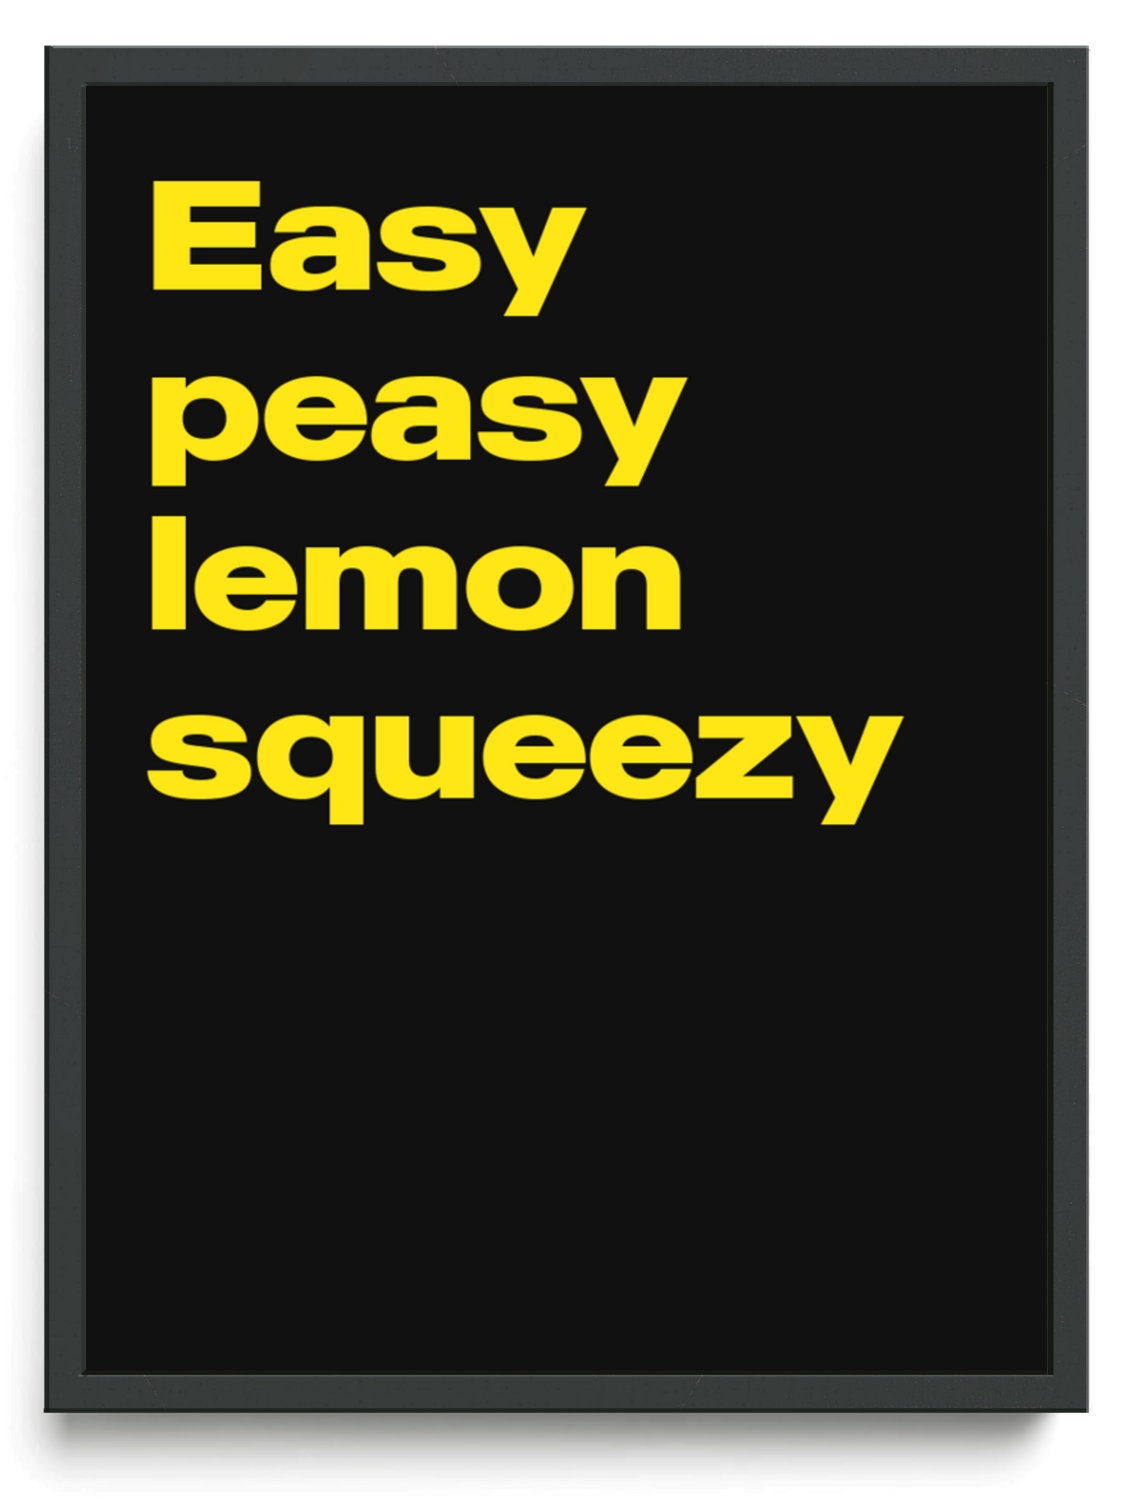 Easy peasy lemon squeezy framed typographic print